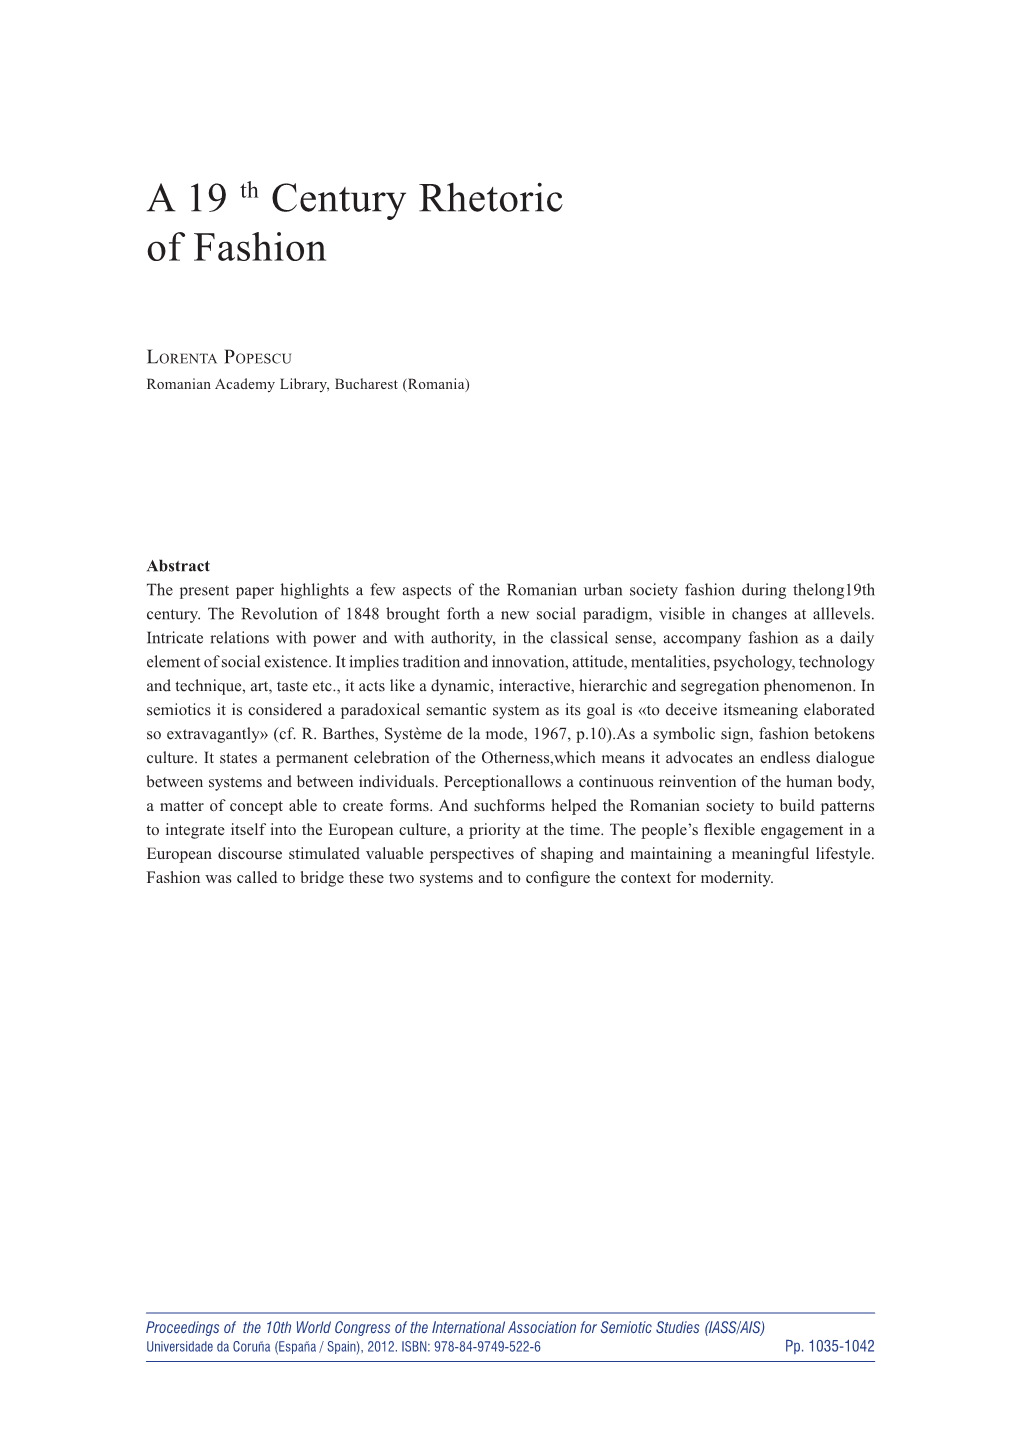 A 19Th Century Rhetoric of Fashion